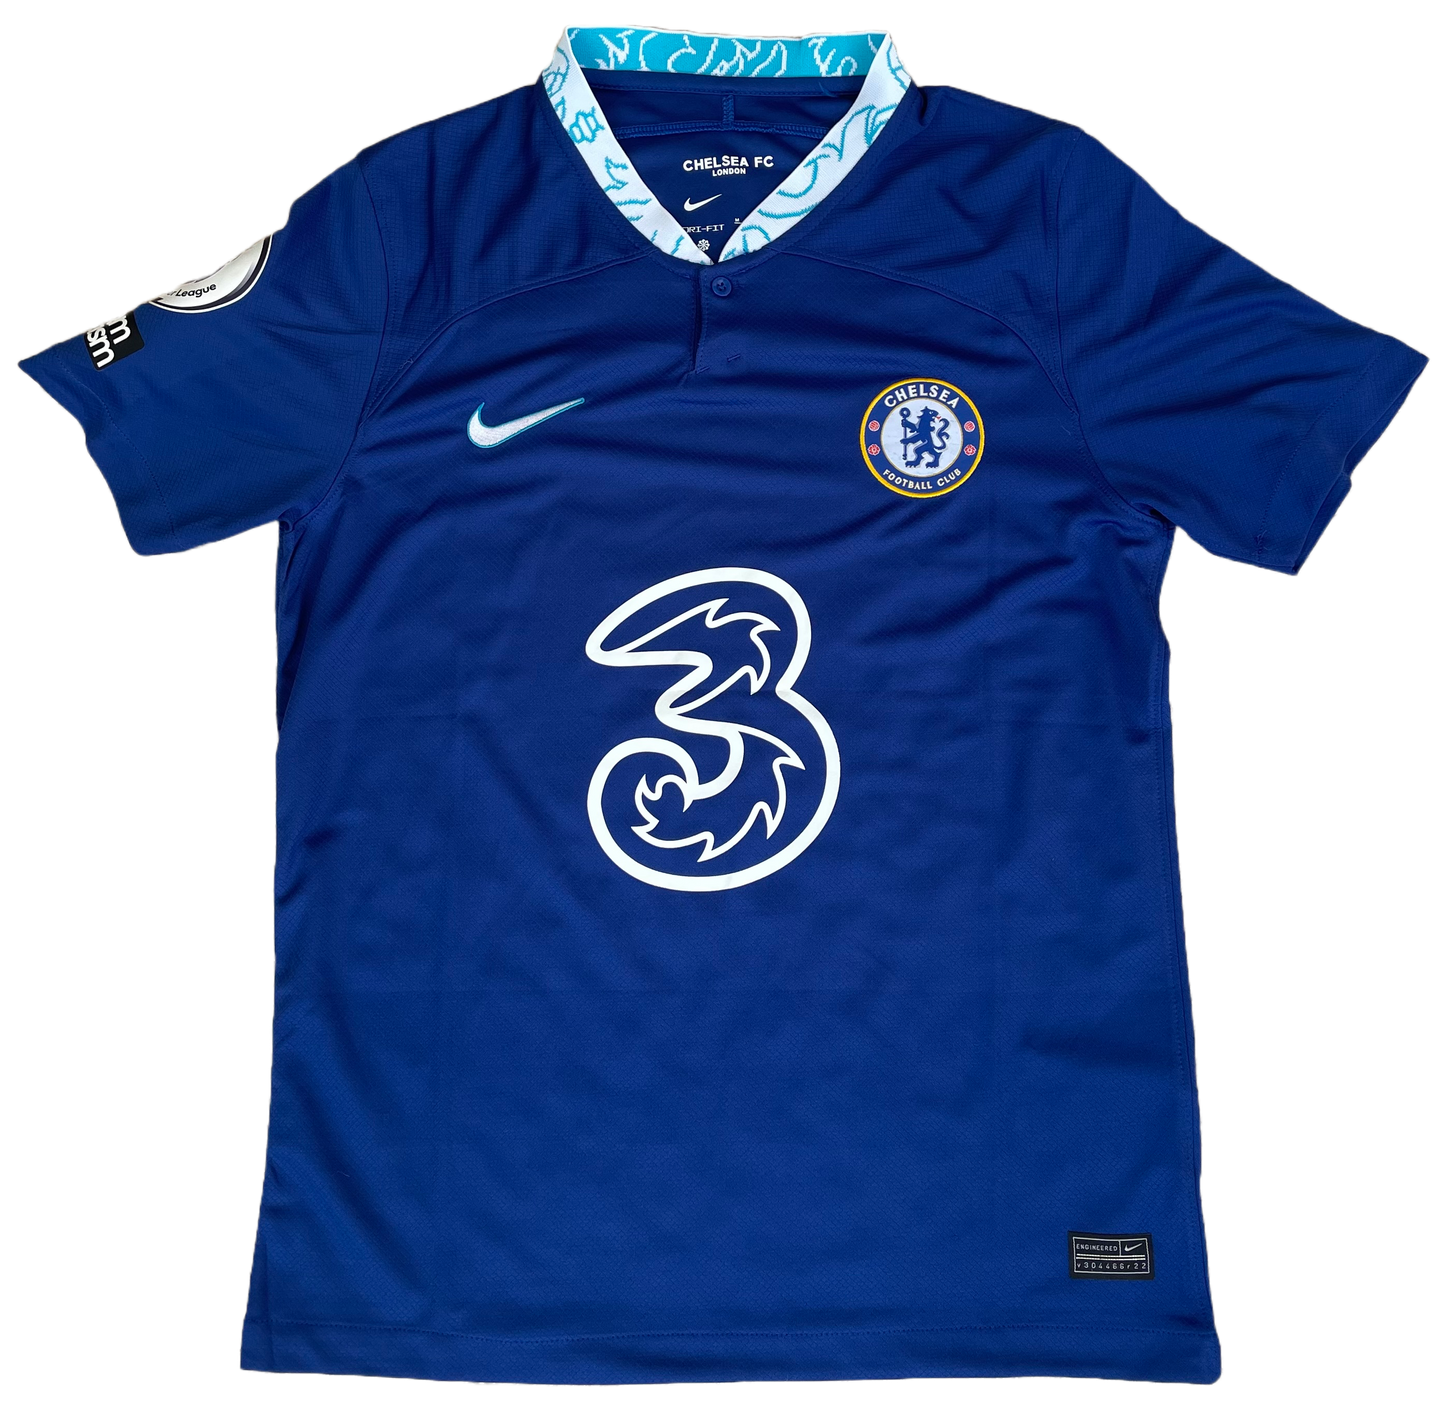 Signed Jorginho Chelsea Home Shirt 22/23